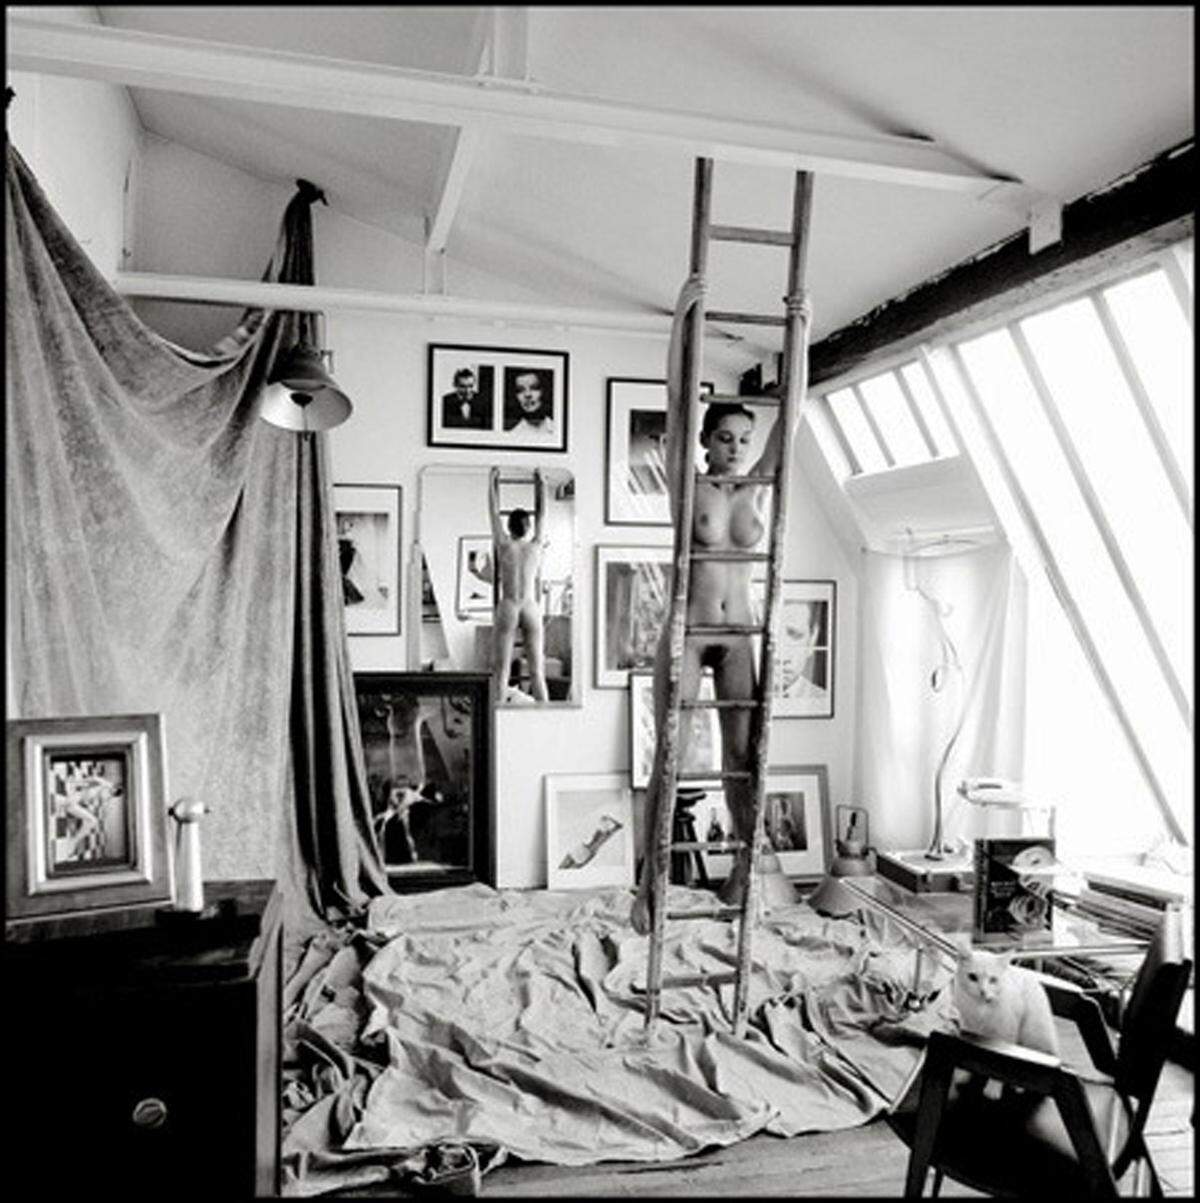 Mark Arbeit widmet sich der künstlerischen Fotografie. 1992 die Serie ‚Artist Atelier’, für die er nackte Modelle in Pariser Künstlerateliers fotografierte.Atelier Reaumur #1, Paris 1993.